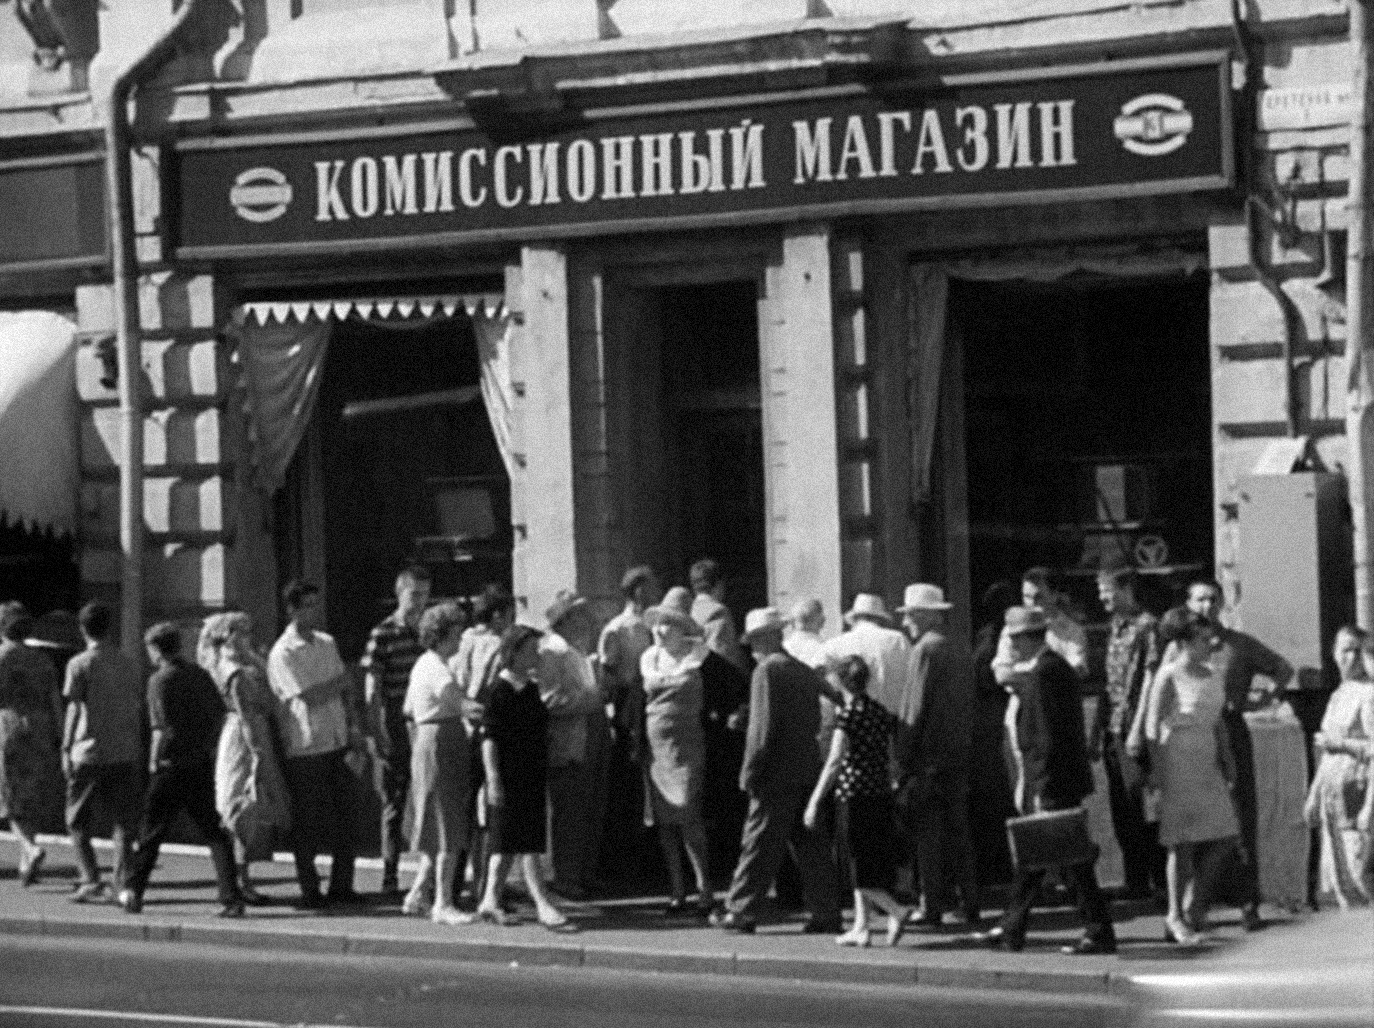 Комиссионный магазин. Москва, 1966 г.